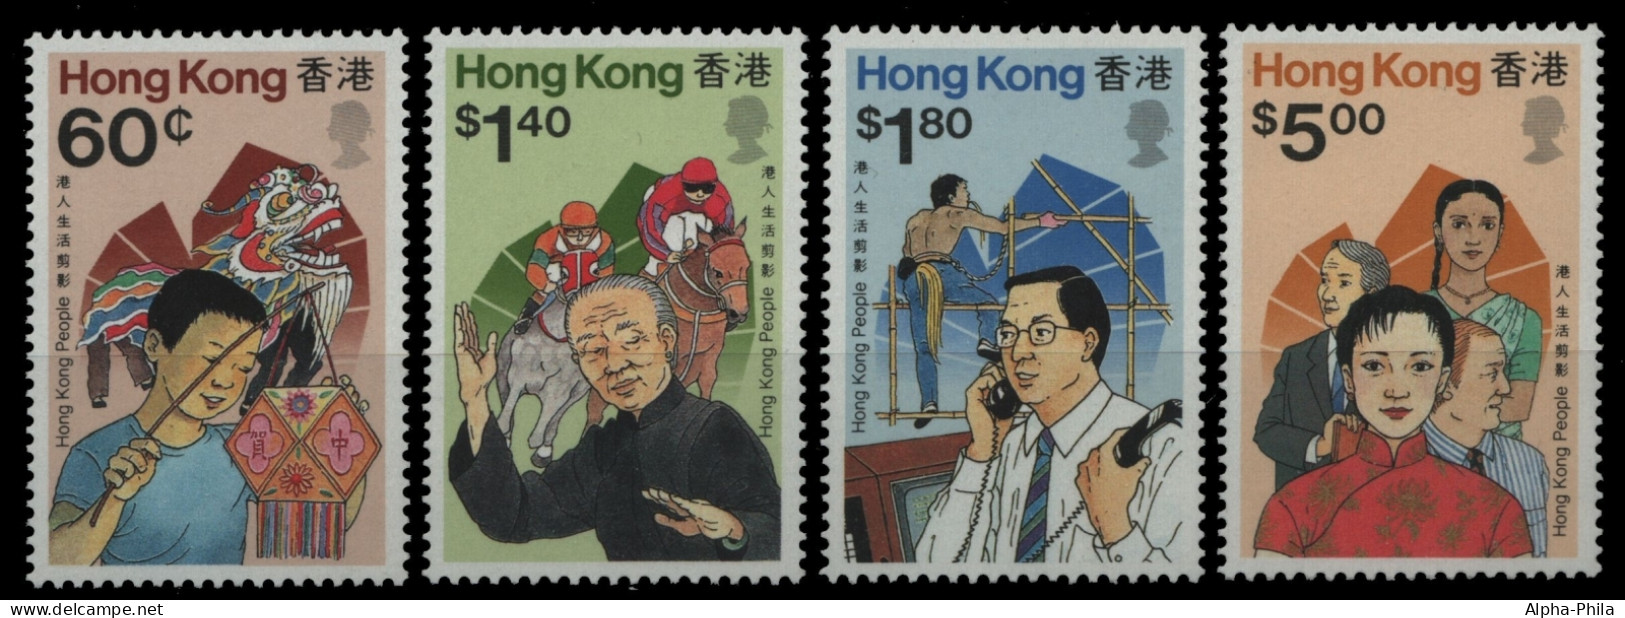 Hongkong 1989 - Mi-Nr. 567-570 ** - MNH - Leben In Hongkong - Ungebraucht